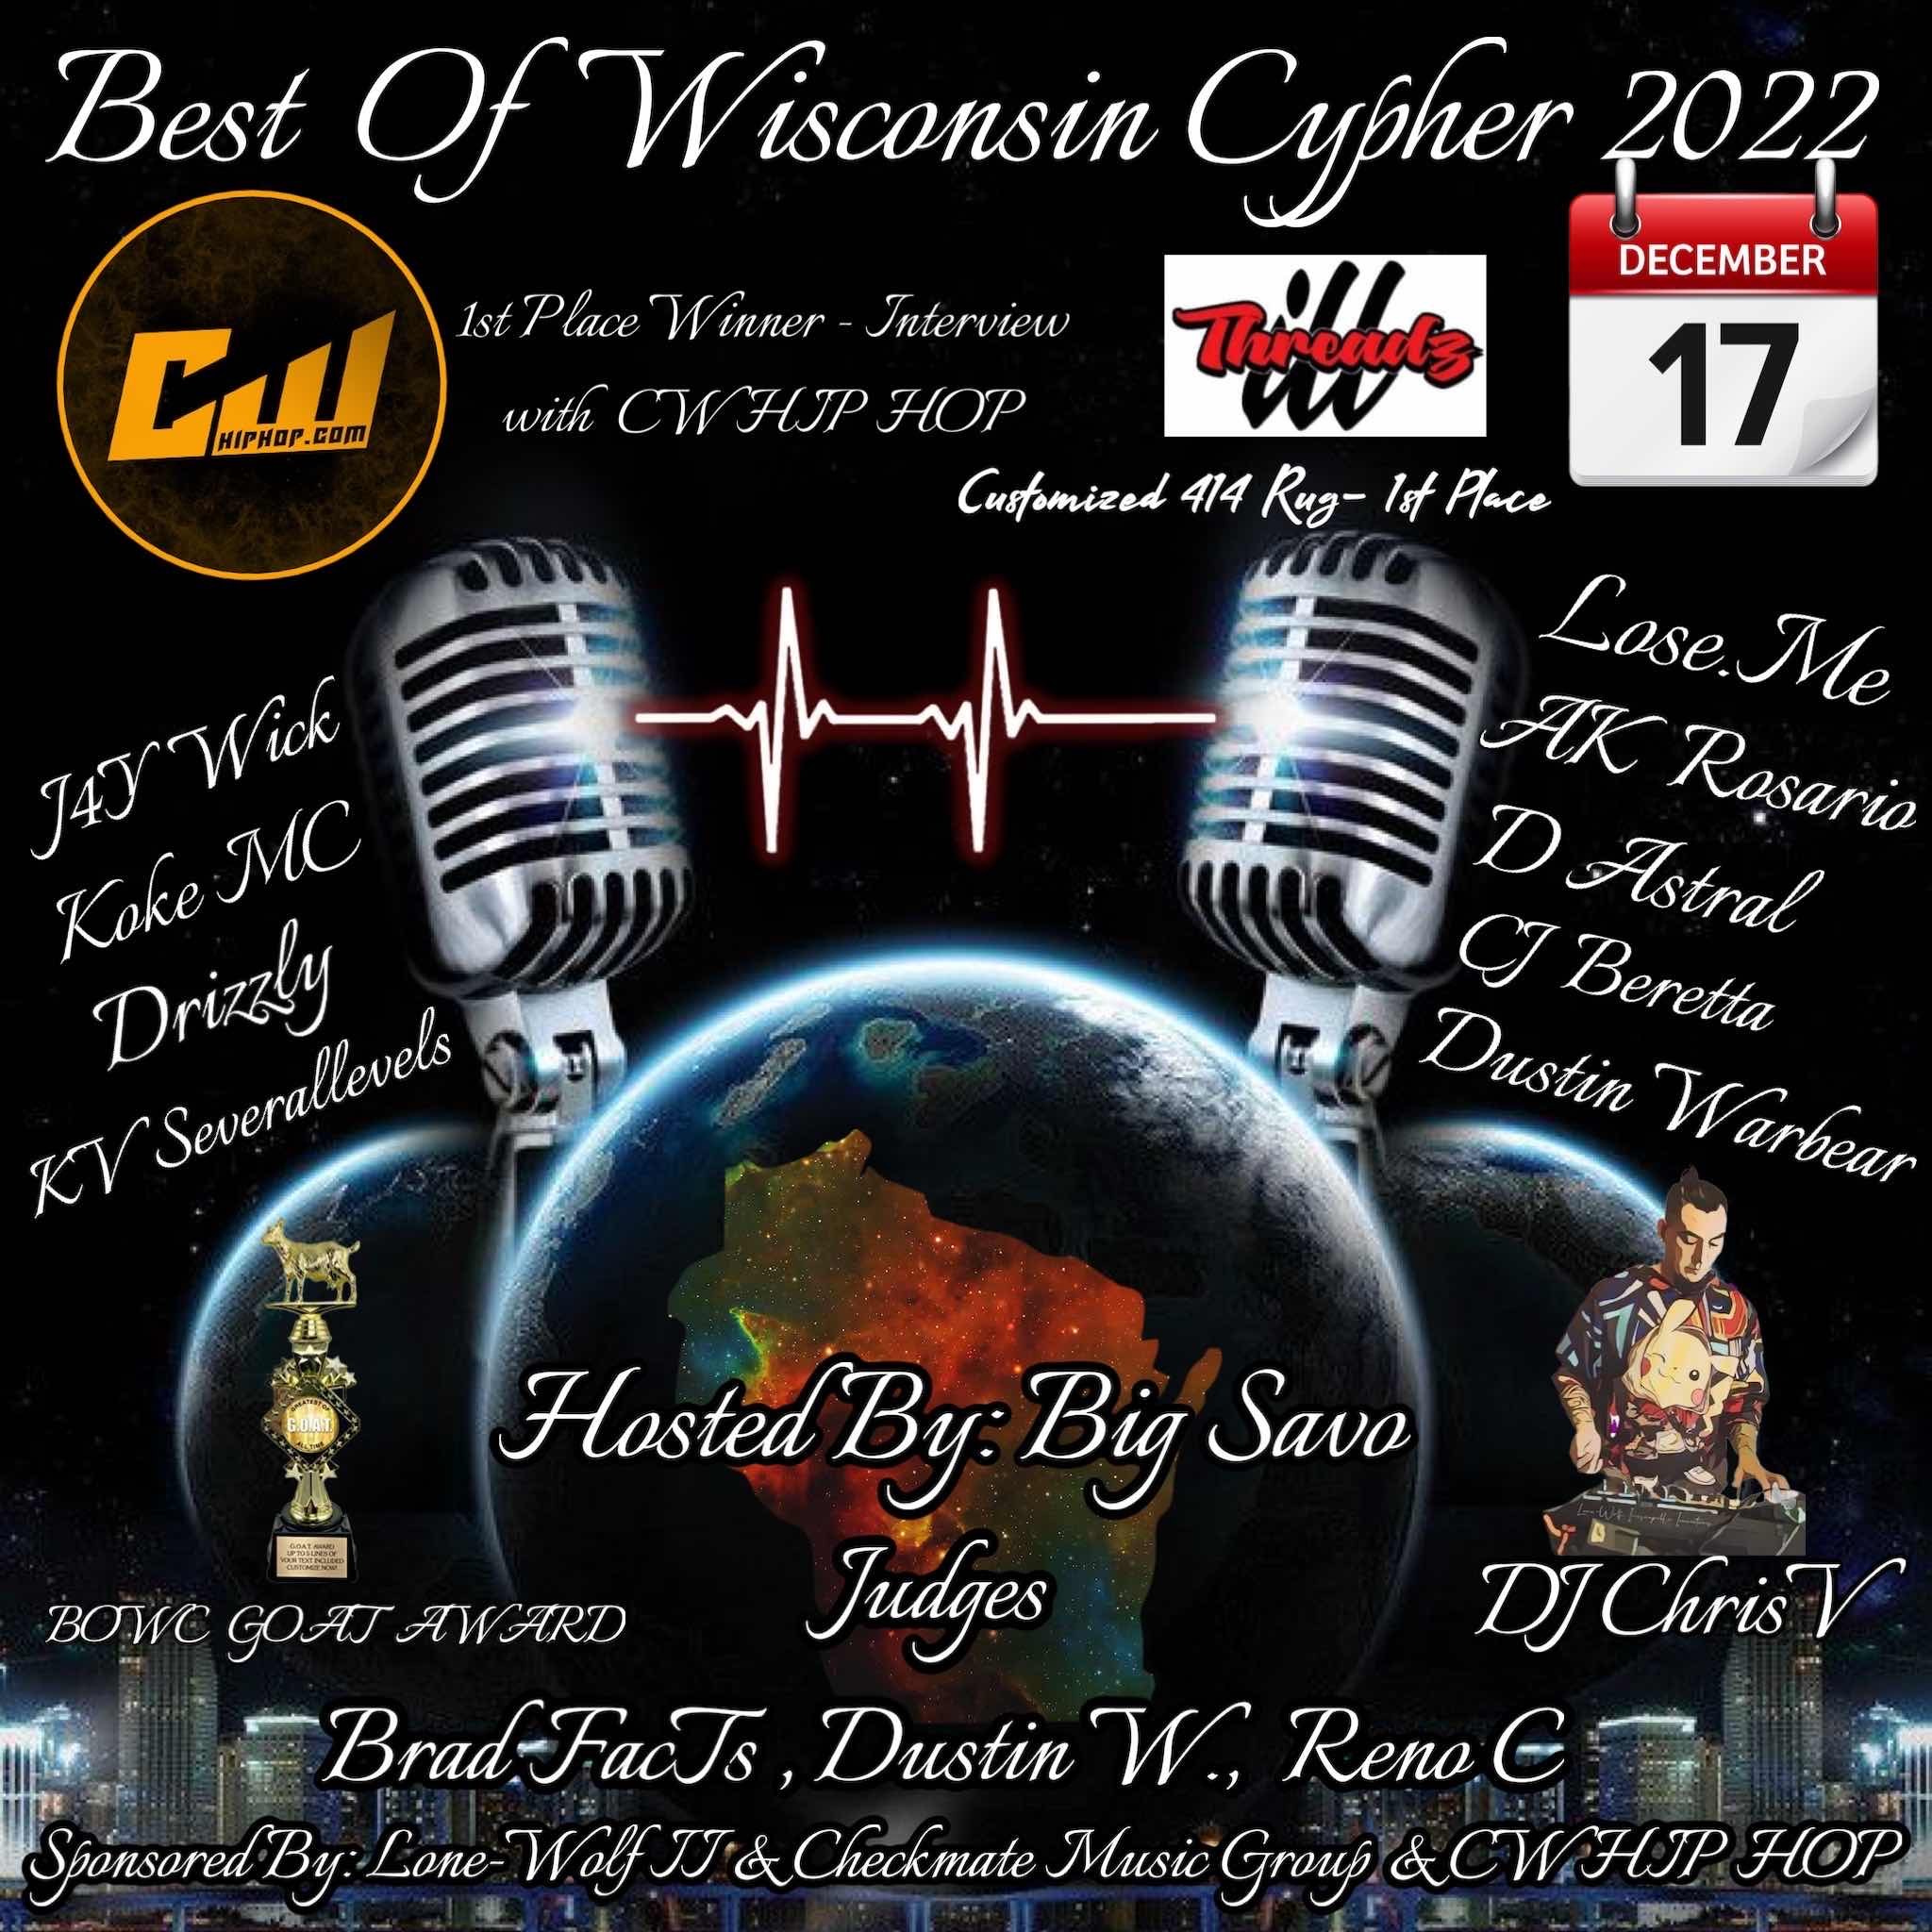 Best Of Wisconsin Cypher 2022